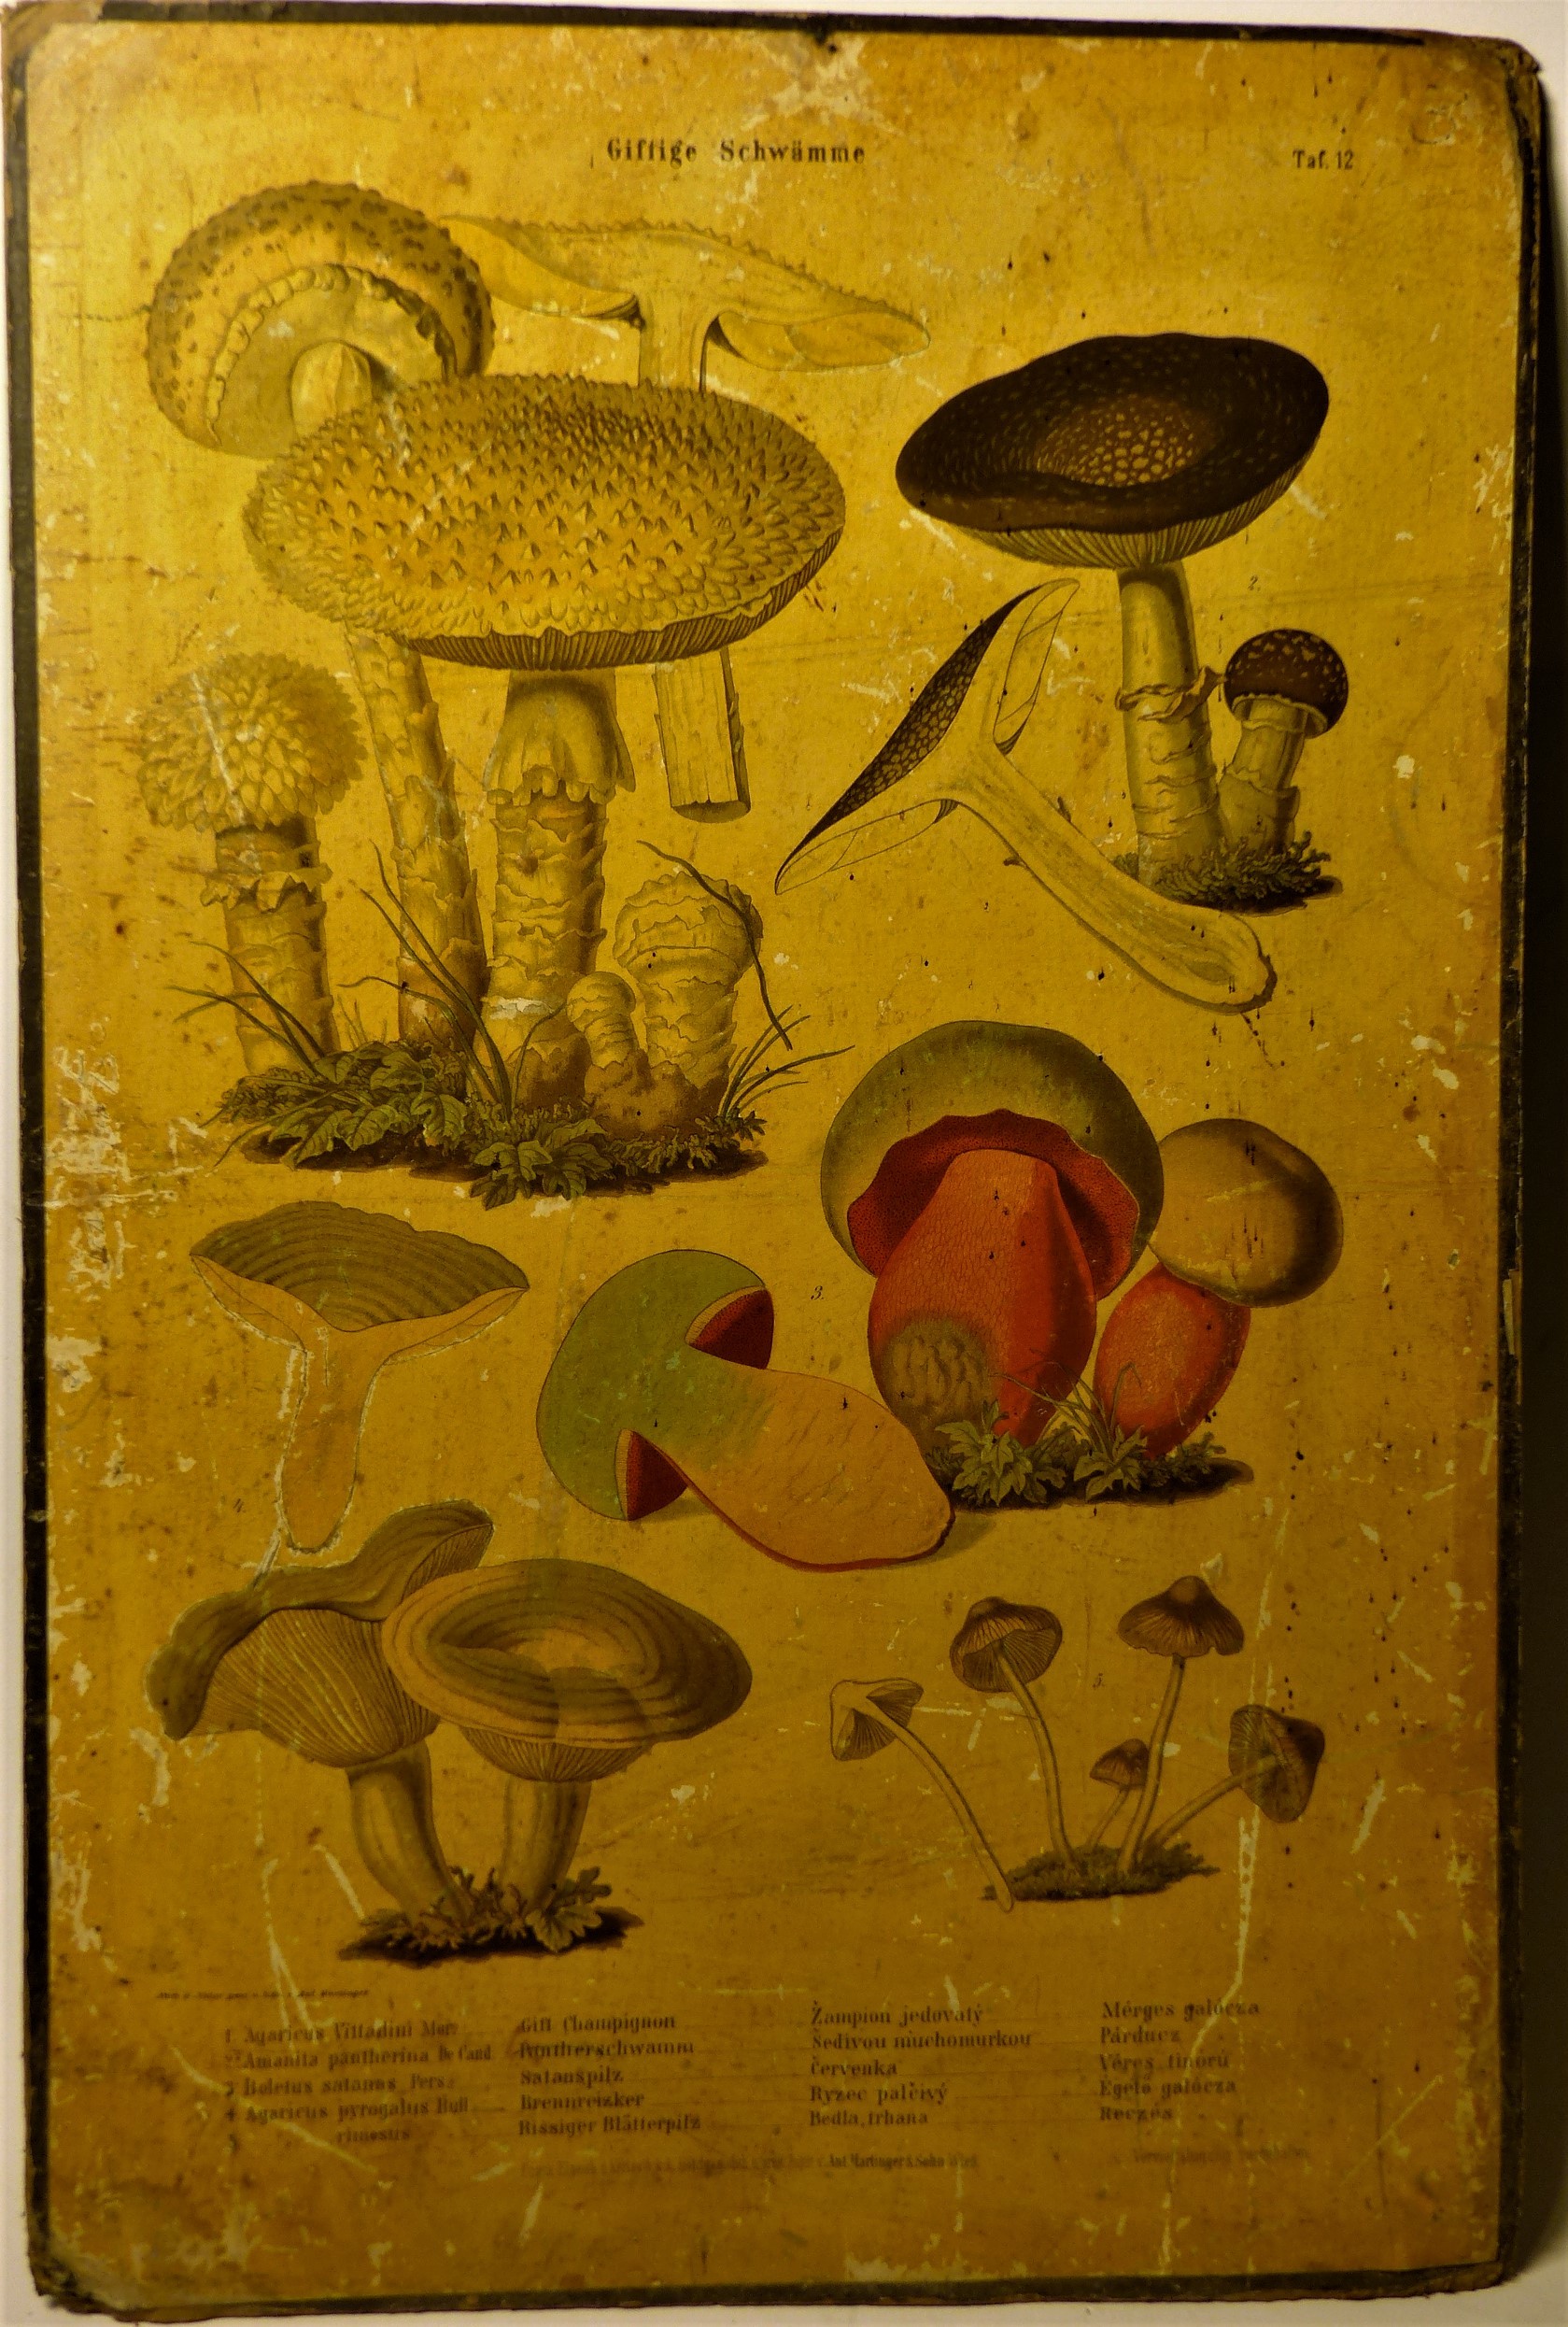 Mérgező gombák (Giftige Schwämme) faliképsorozat 12. tábla (Tapolcai Városi Múzeum CC BY-NC-SA)